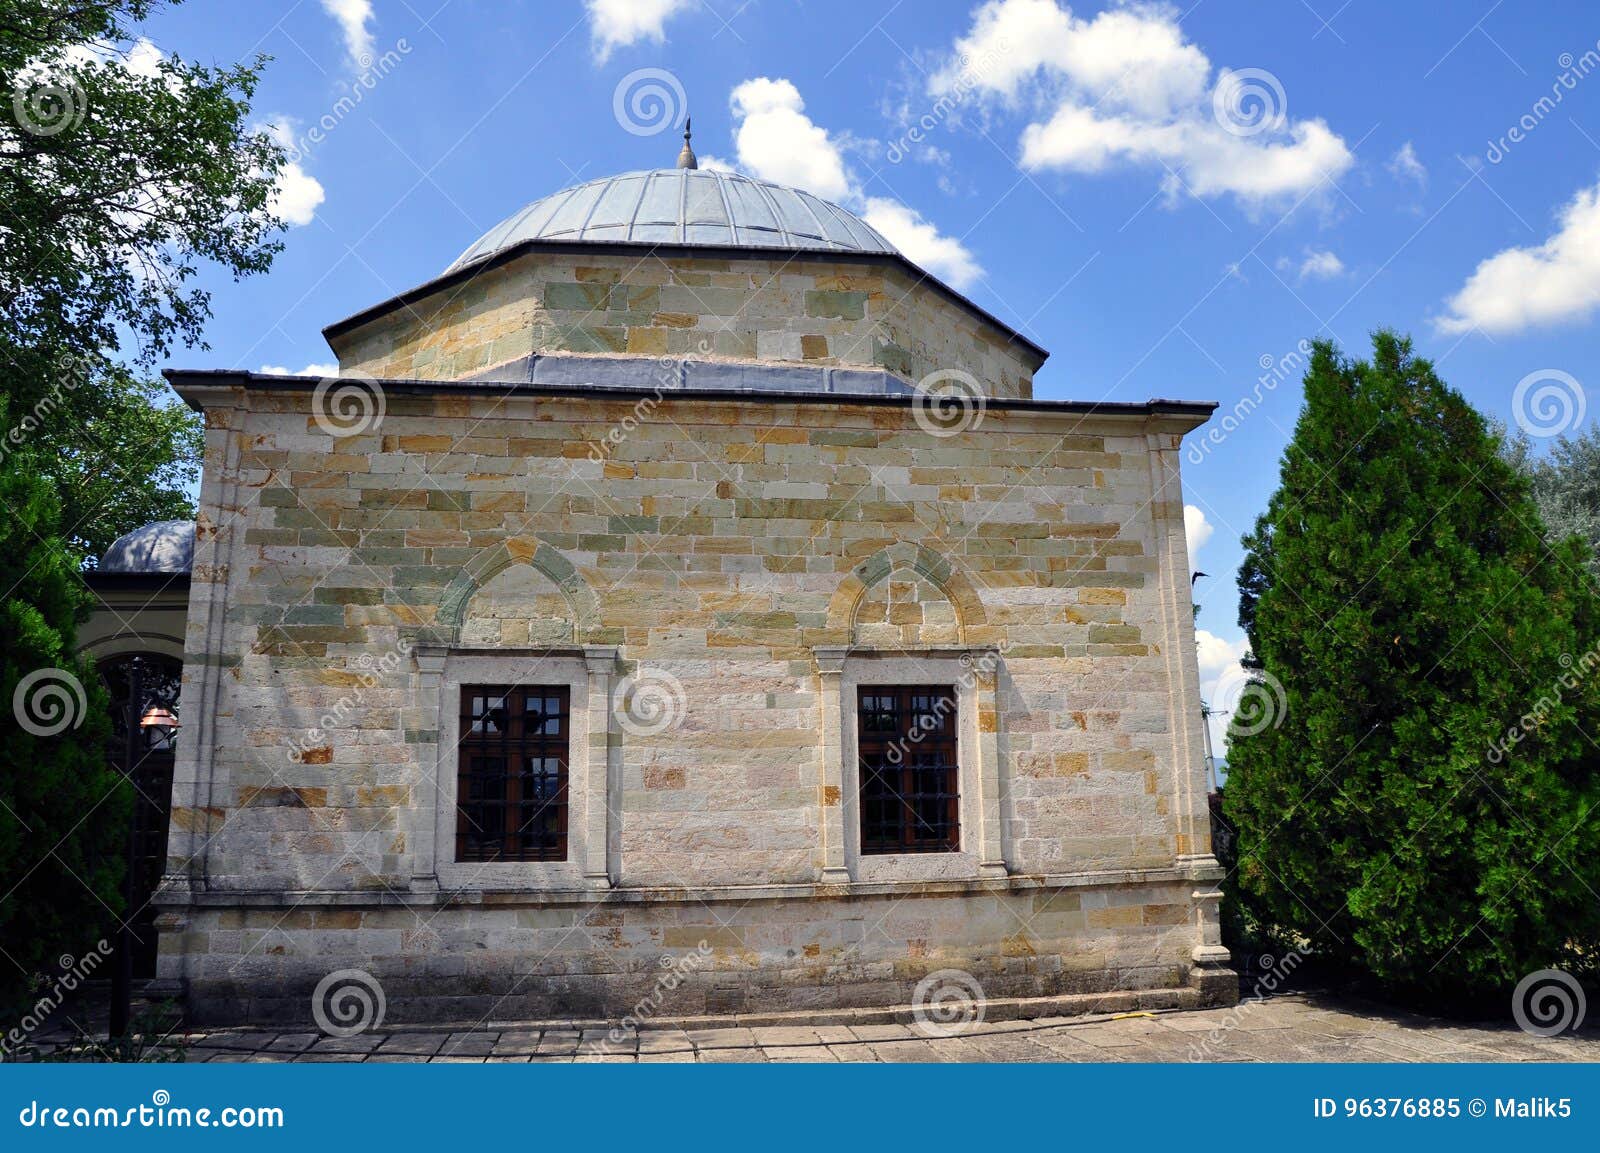 the tomb of sultan murad located in kosovo.